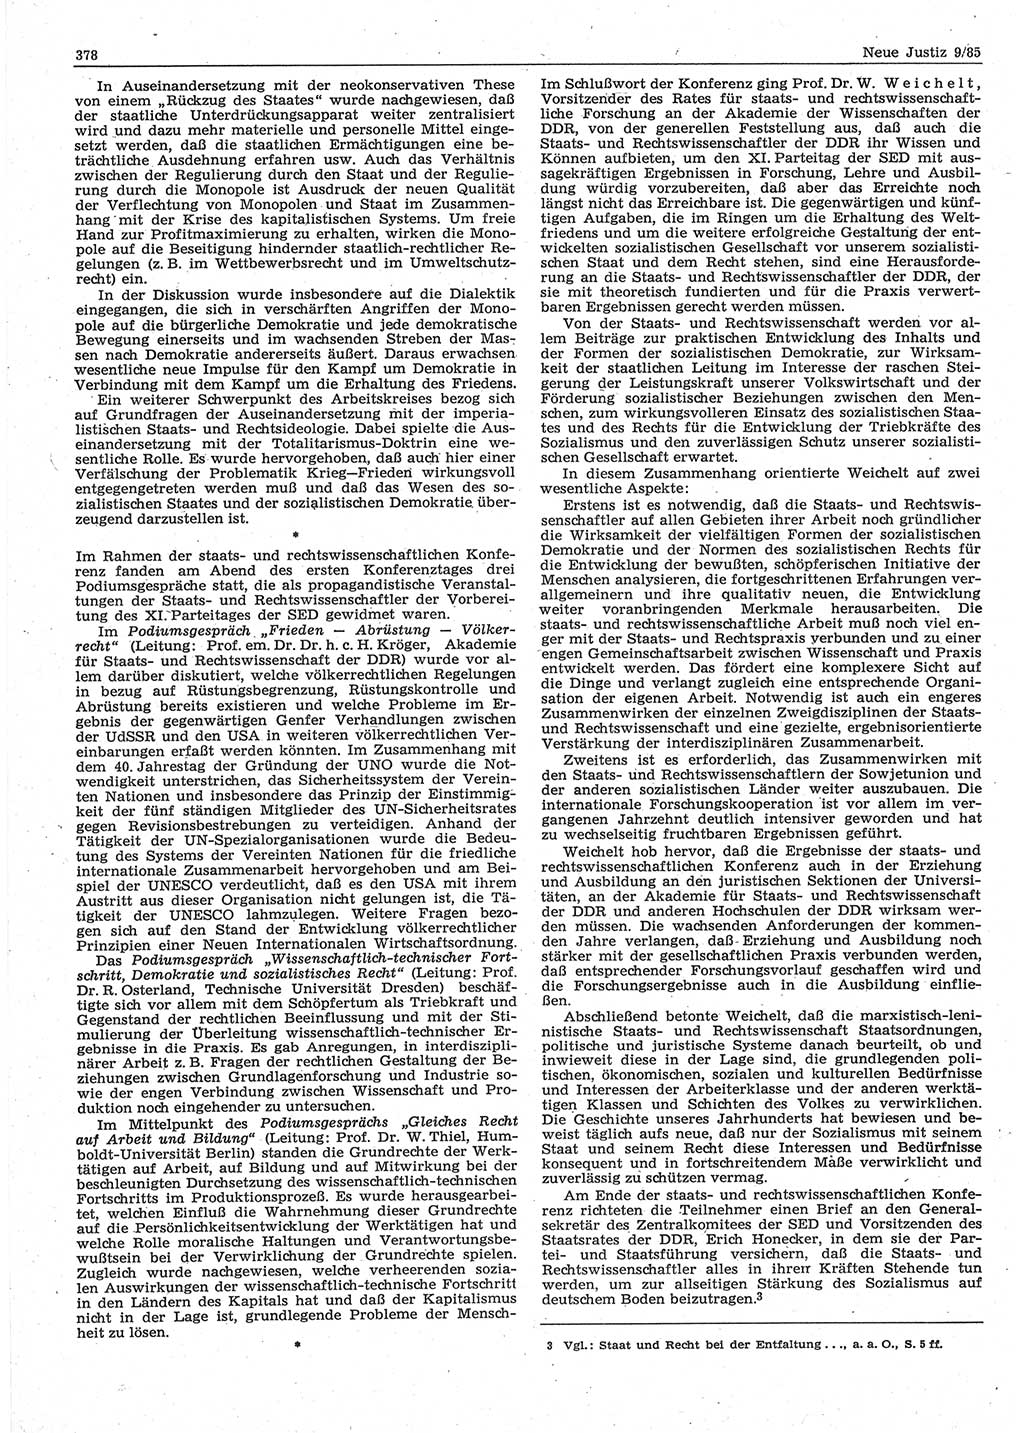 Neue Justiz (NJ), Zeitschrift für sozialistisches Recht und Gesetzlichkeit [Deutsche Demokratische Republik (DDR)], 39. Jahrgang 1985, Seite 378 (NJ DDR 1985, S. 378)